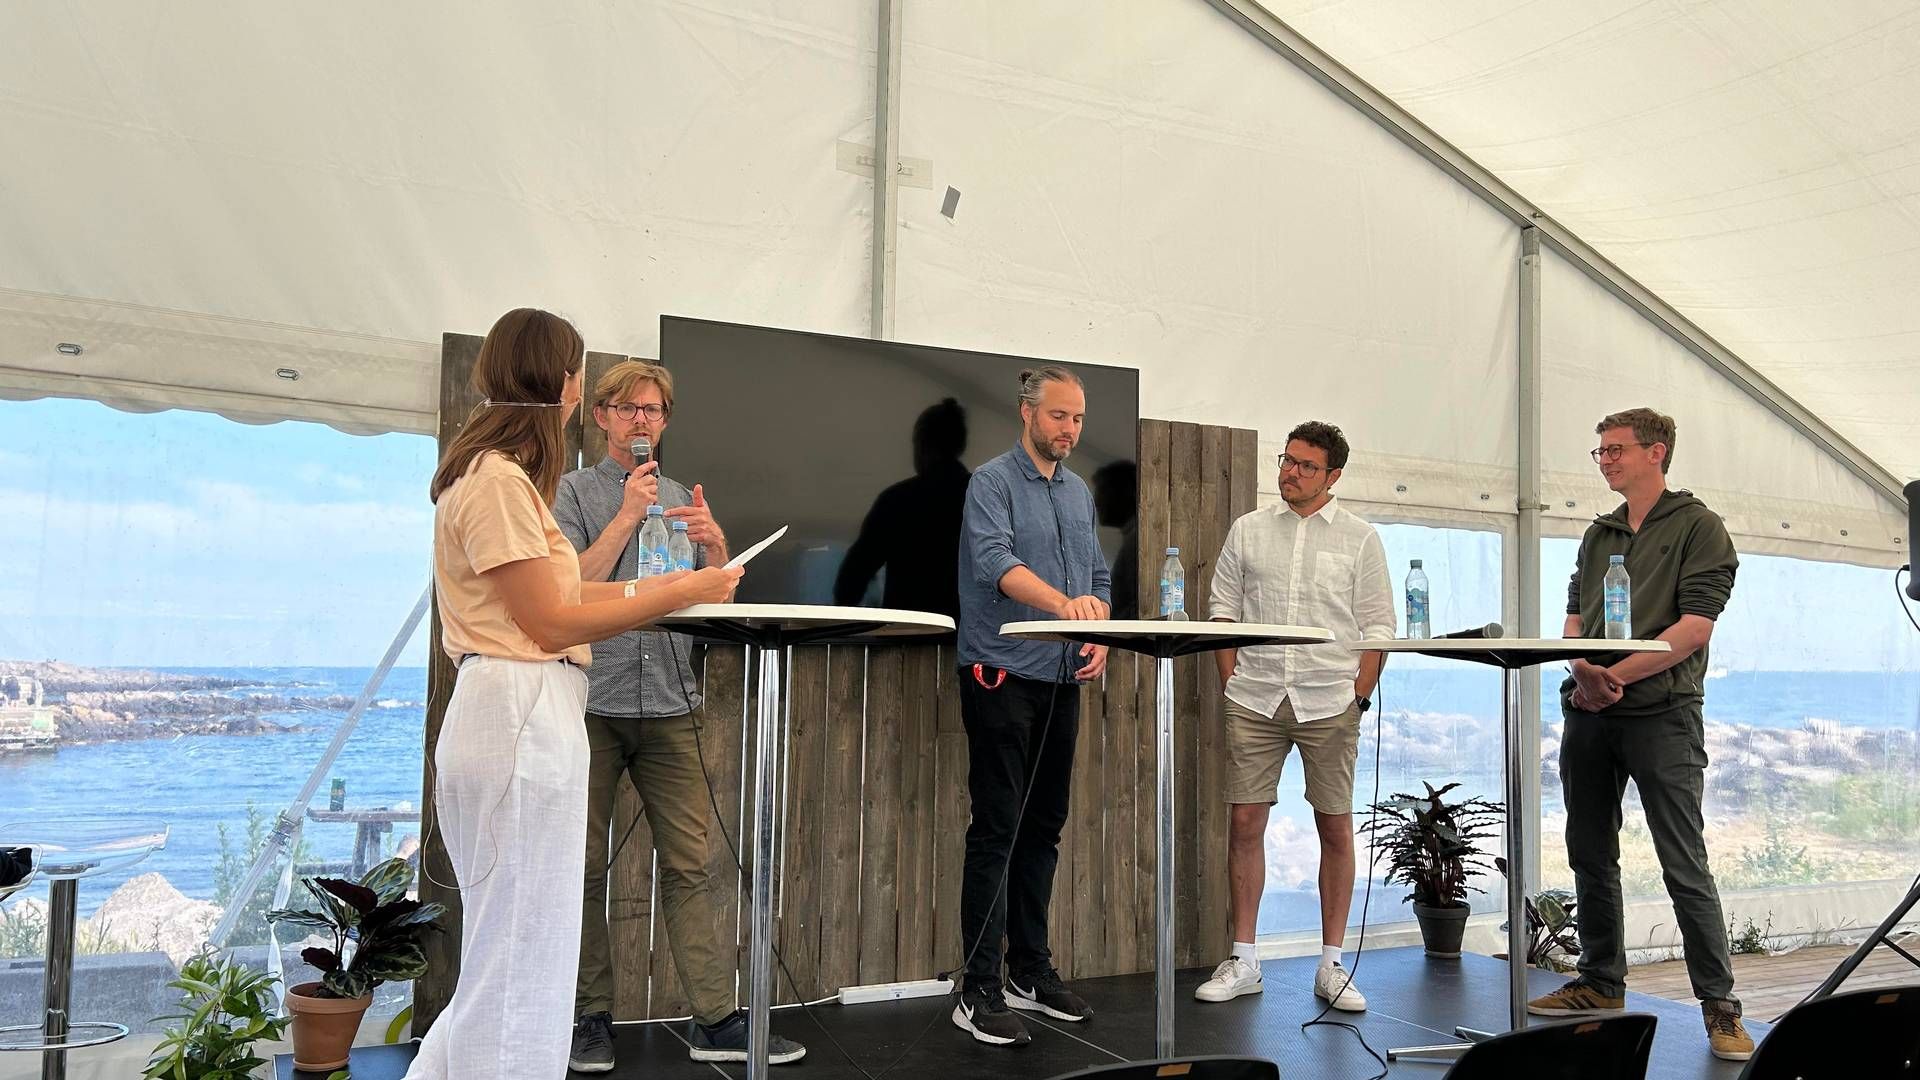 Panelet fra venstre mod højre: Bjarke Fonnesbech, Let's Go, Lasse Riber Rosholm, E.On, Morten Jakobsen, Share Now, Karsten Lauritzen, DI Transport. | Foto: Foto: Mads Oddershede